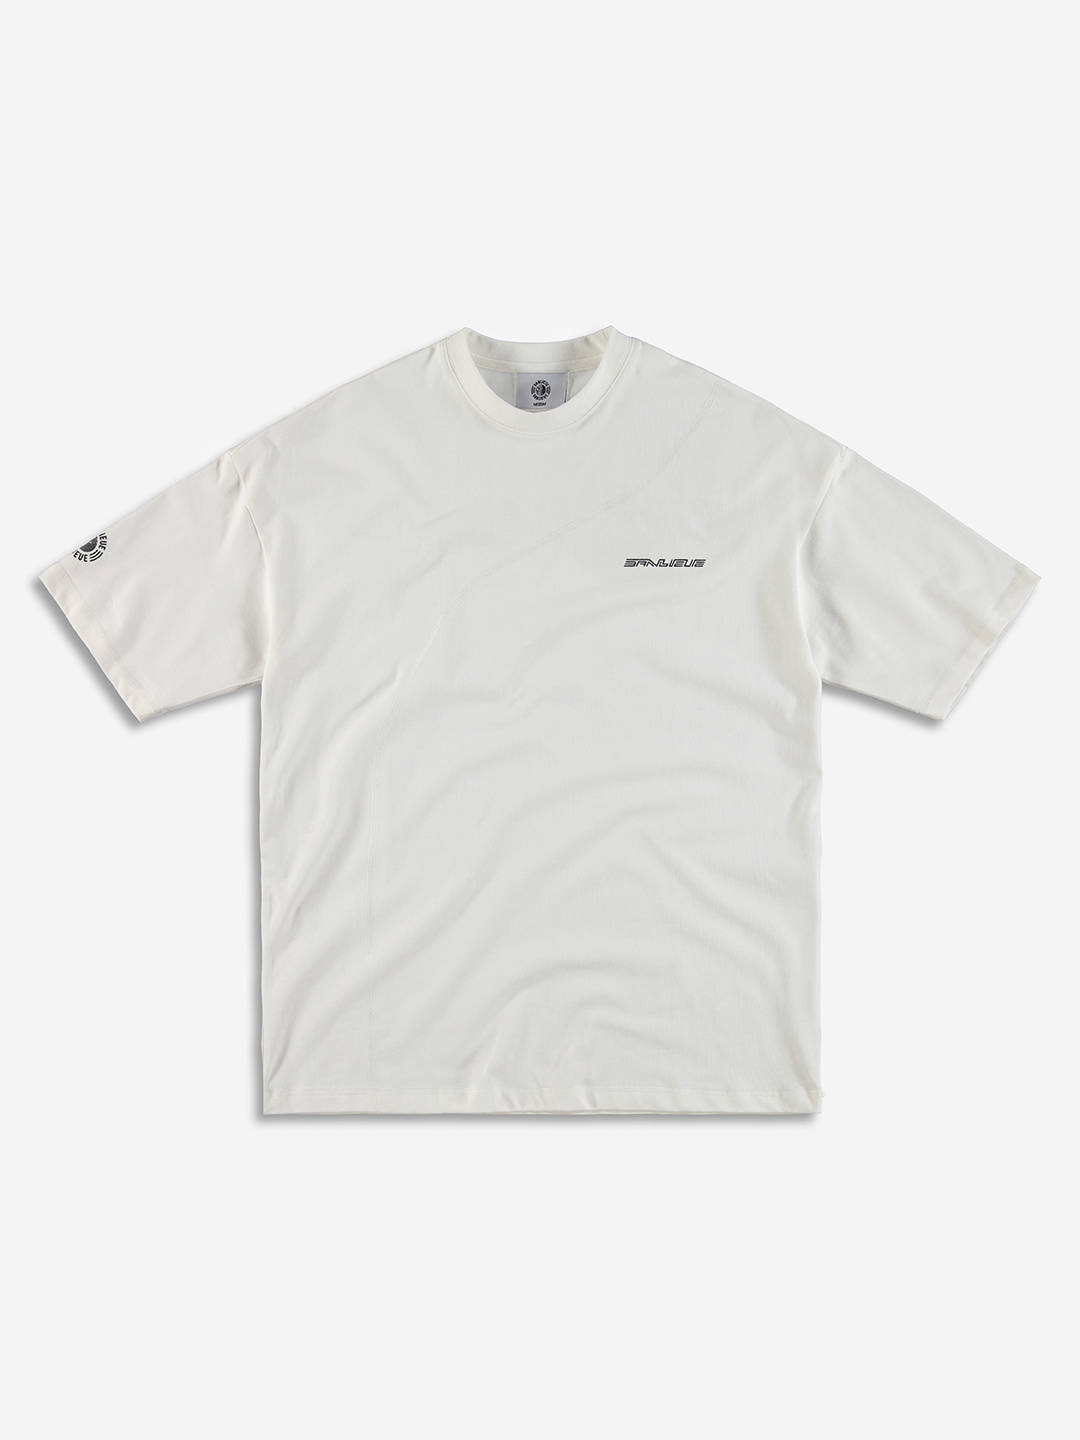 BANLIEUE | Diagonal Stitch Oversized T-Shirt White - Clan de Banlieue